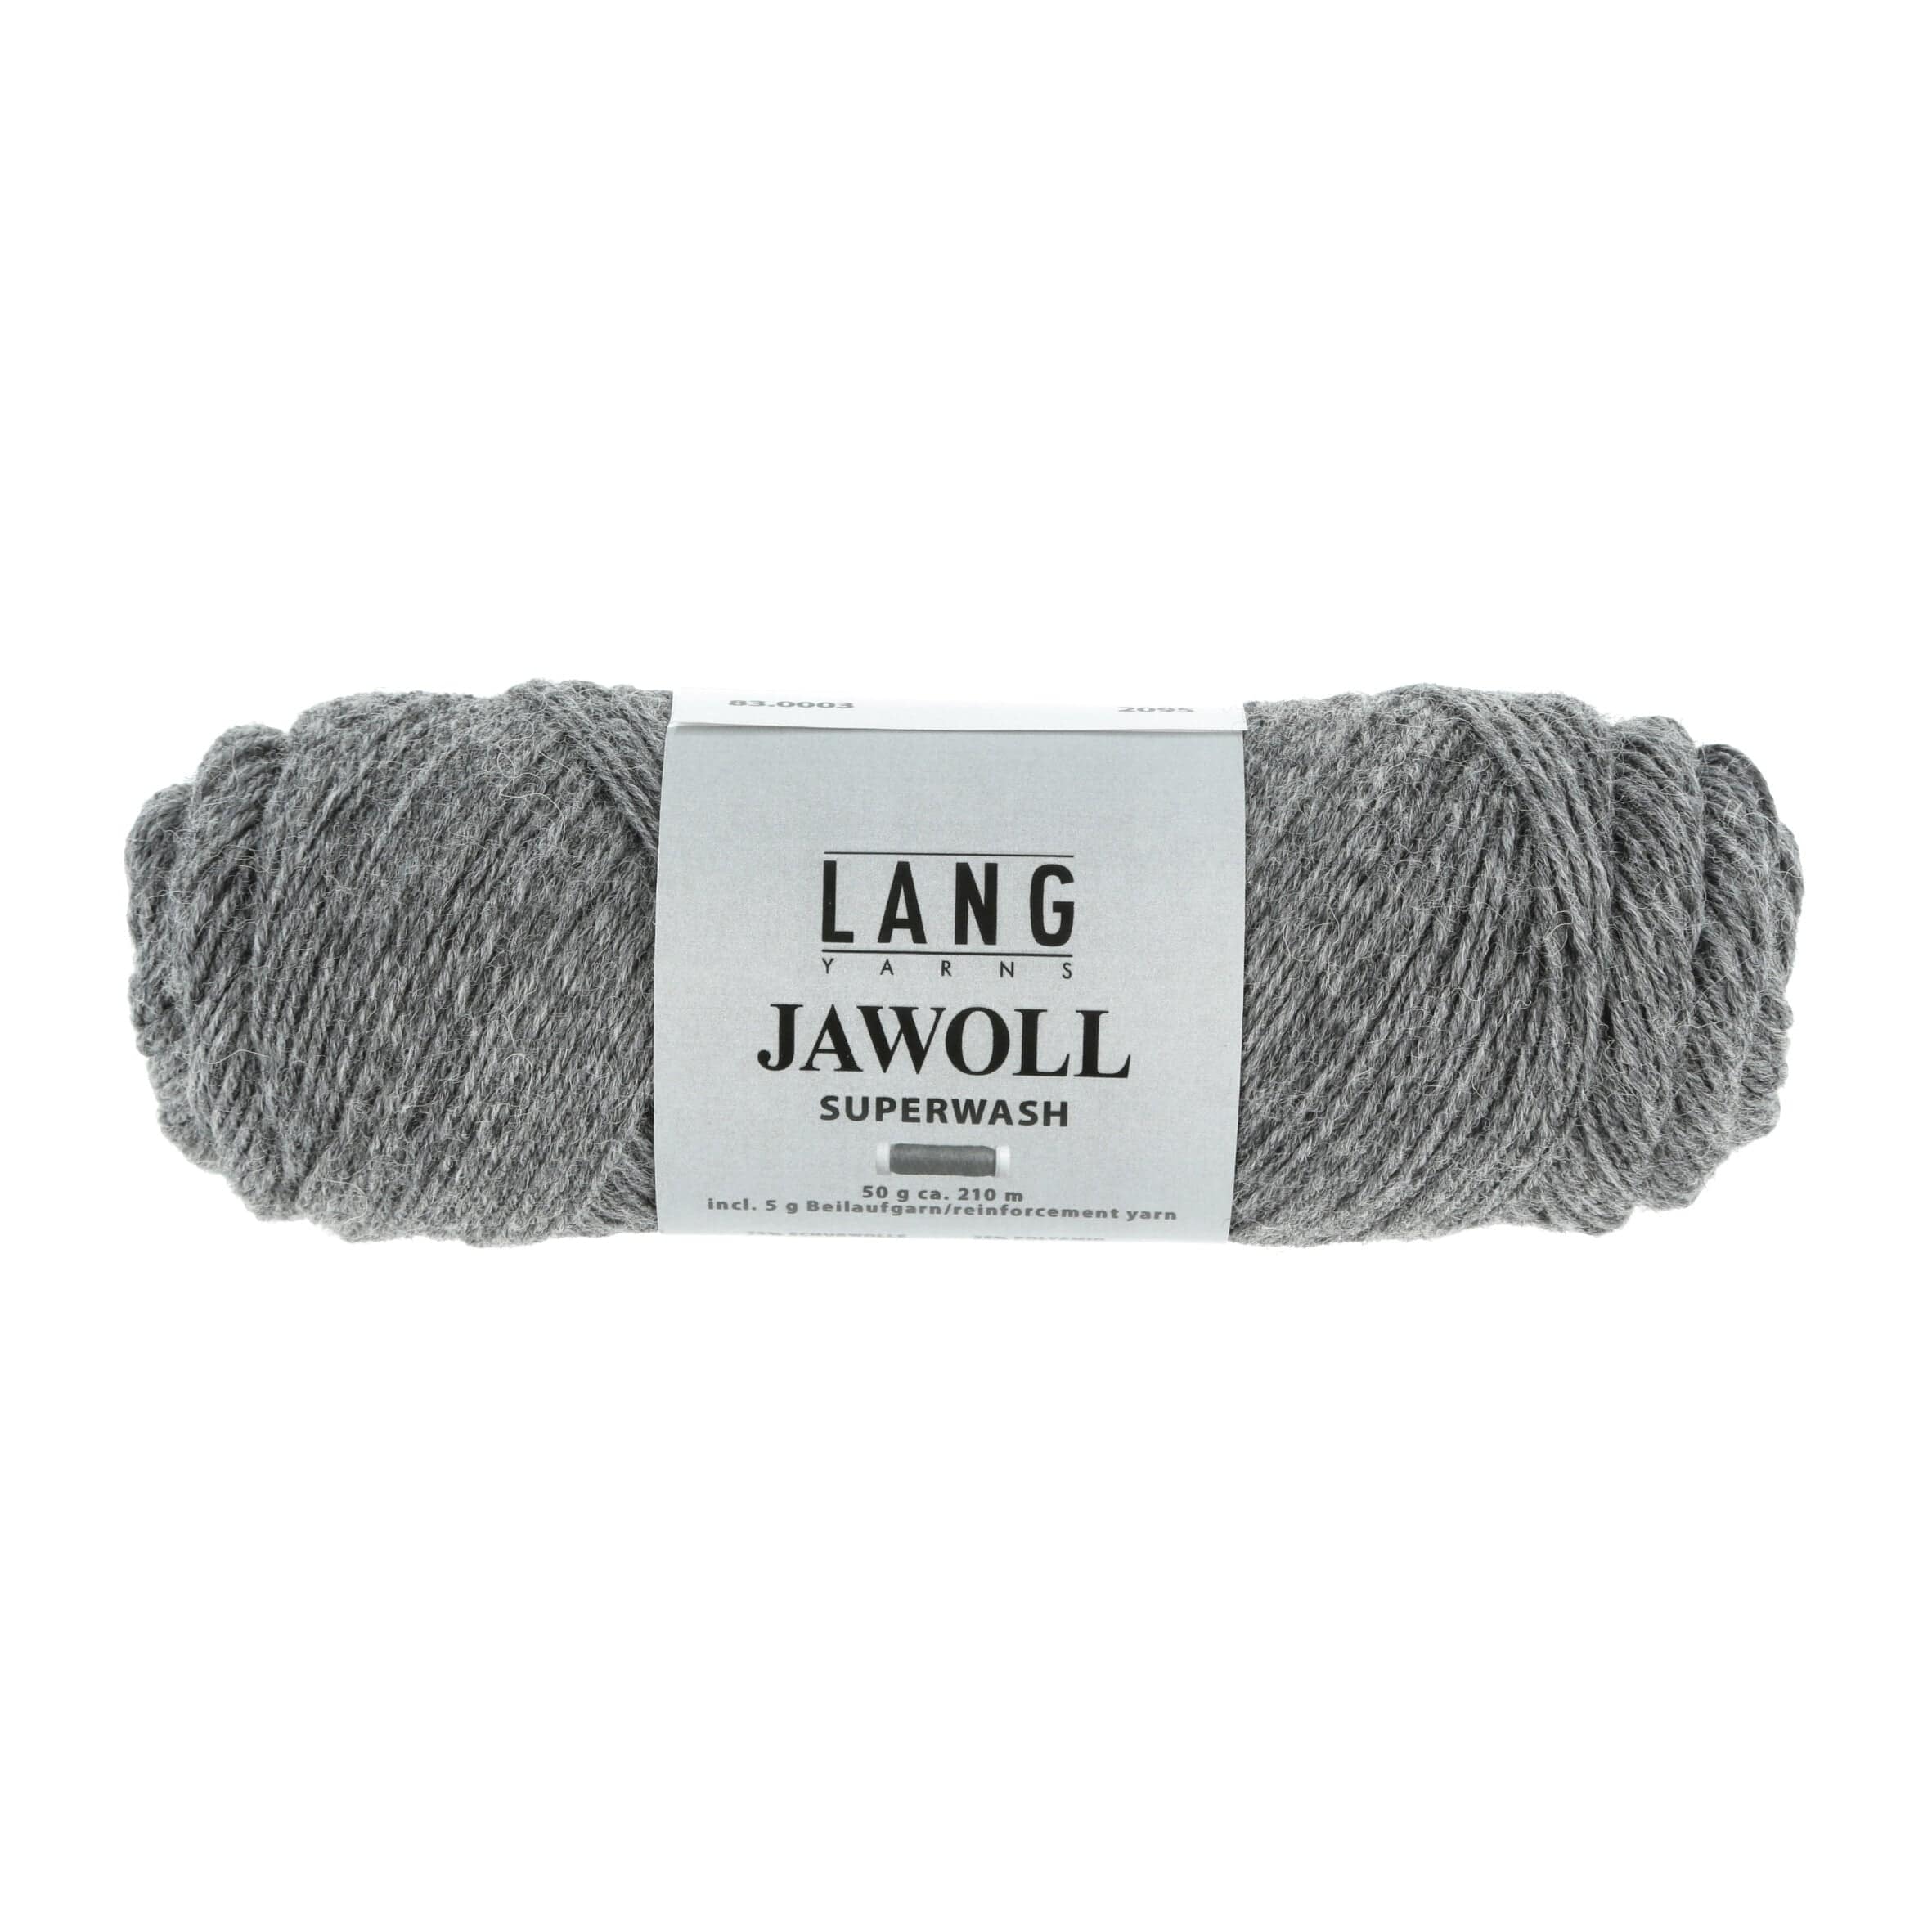 JAWOLL von LANG YARNS jetzt online kaufen bei OONIQUE